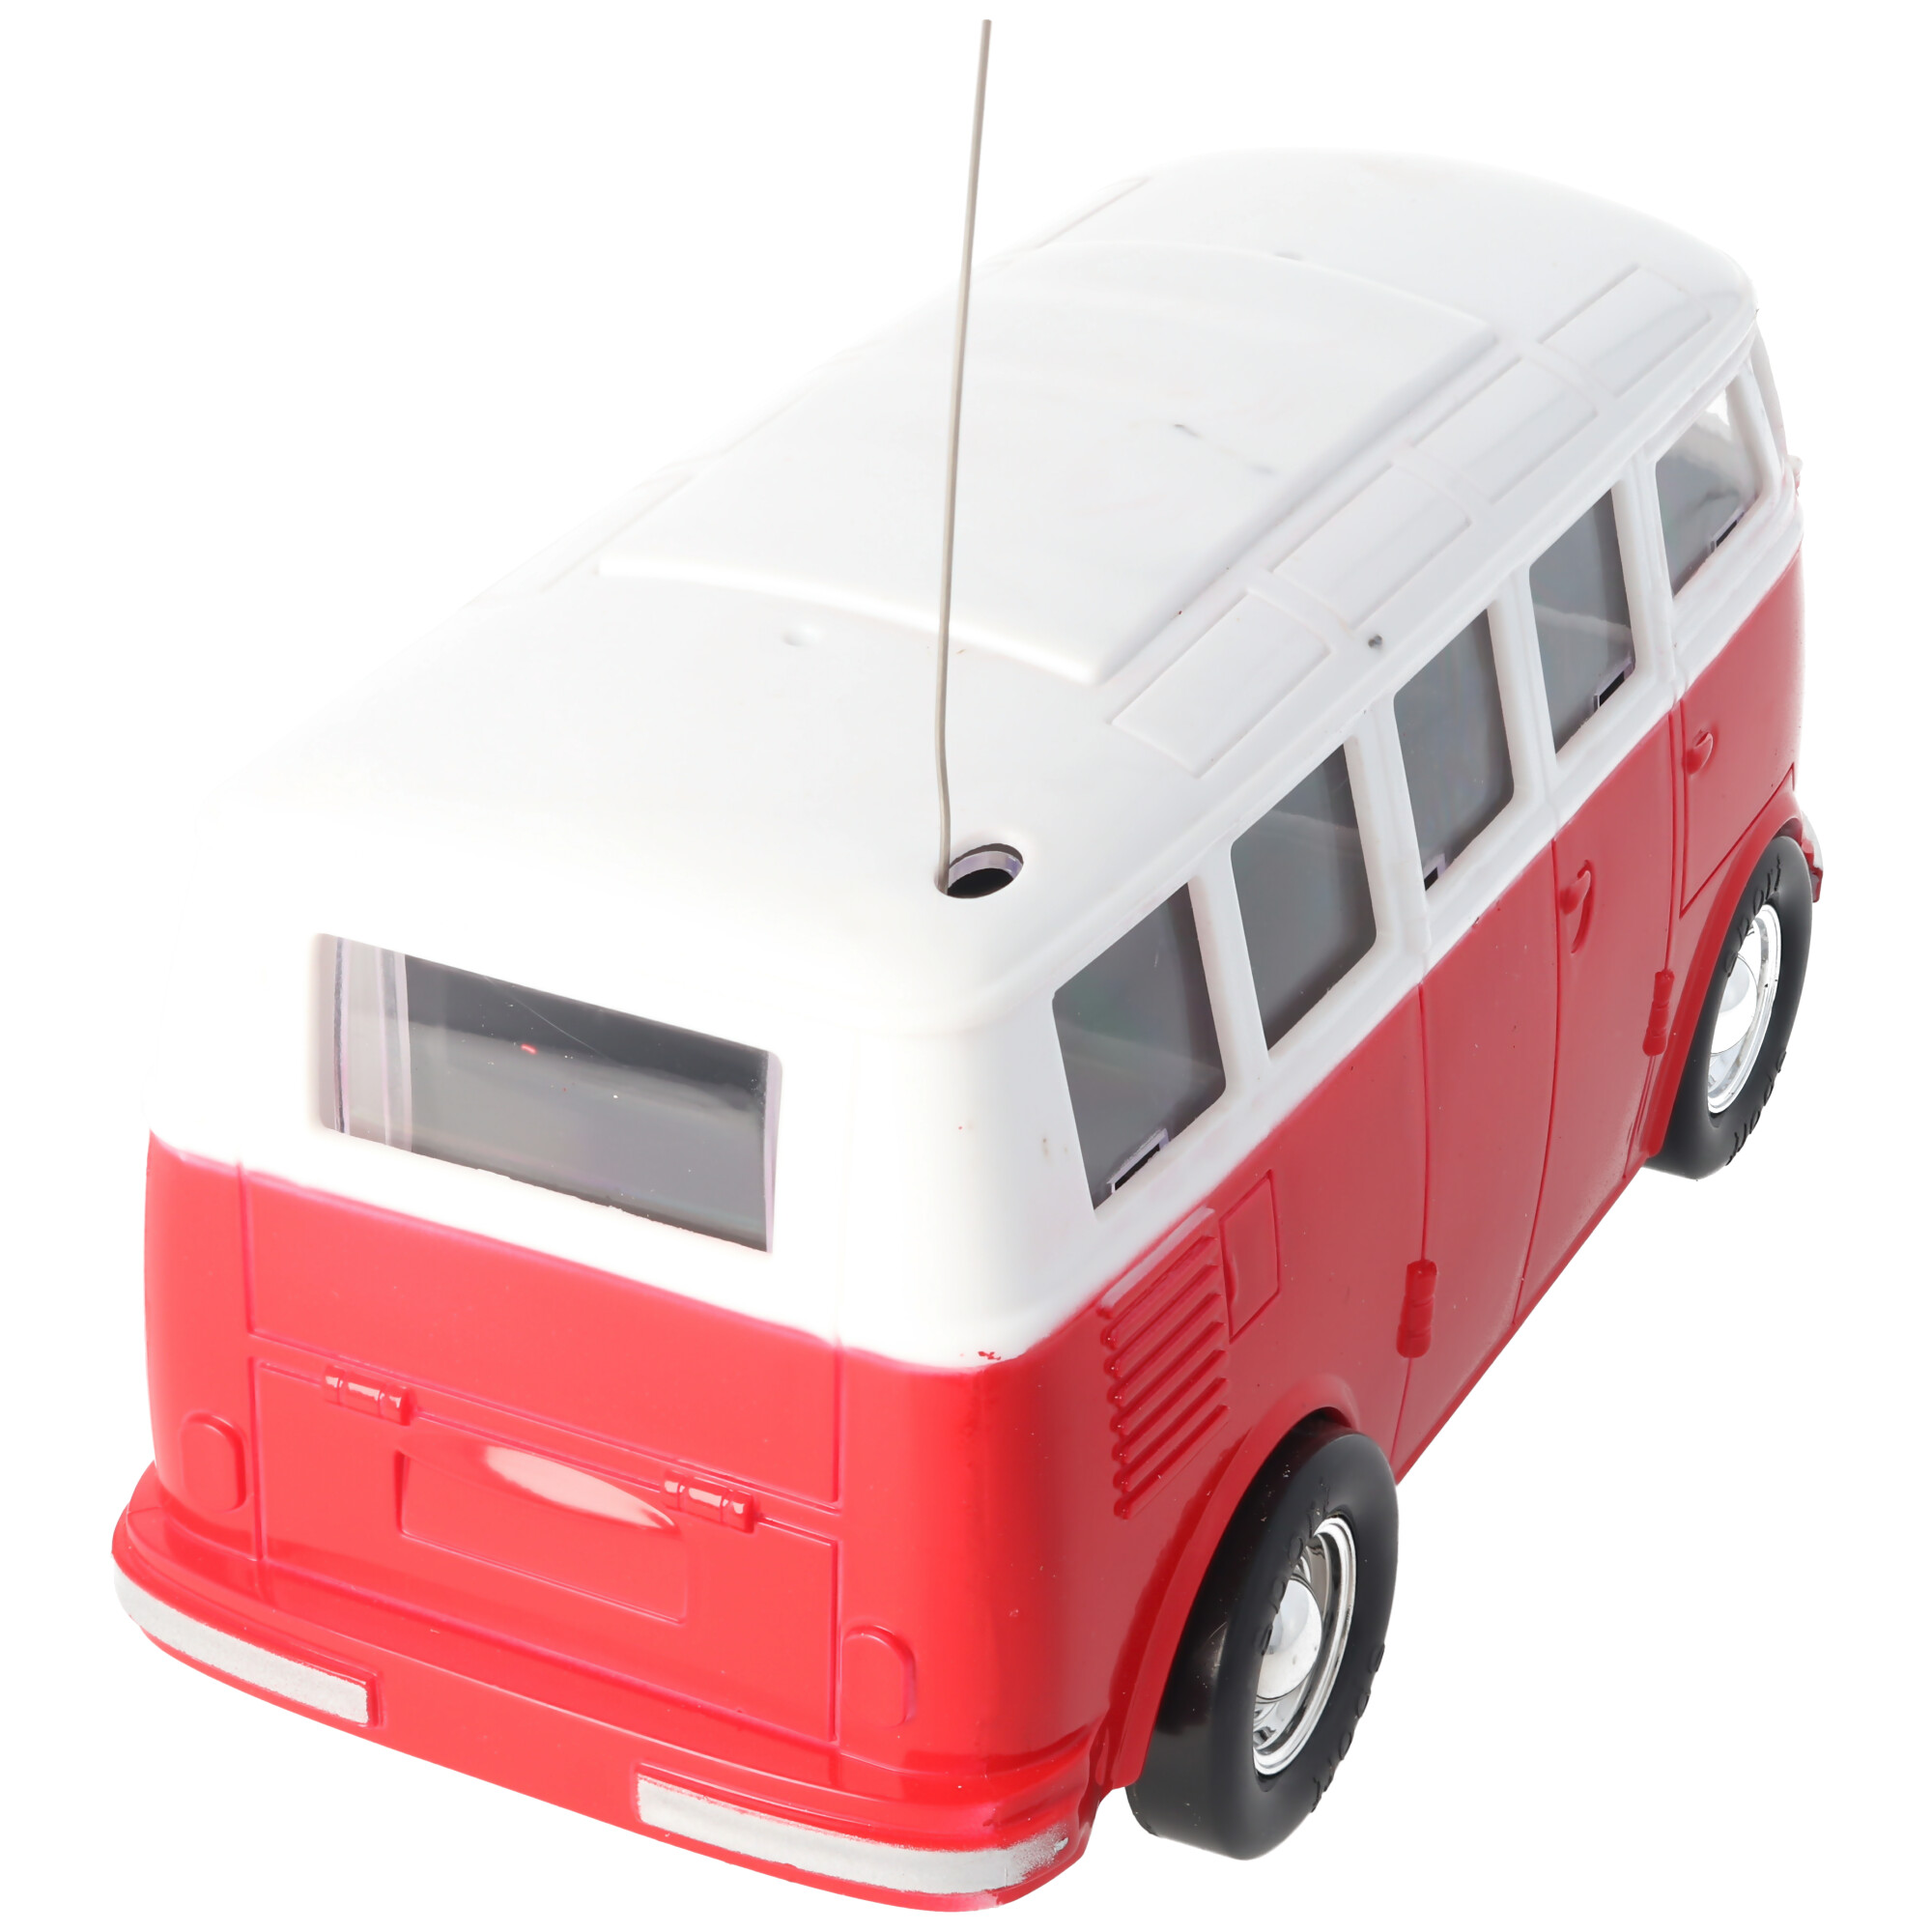 Retrobus Bulli RC-Model im Maßstab 1:24 Farbe rot inklusive 5 AA Mignon Batterien